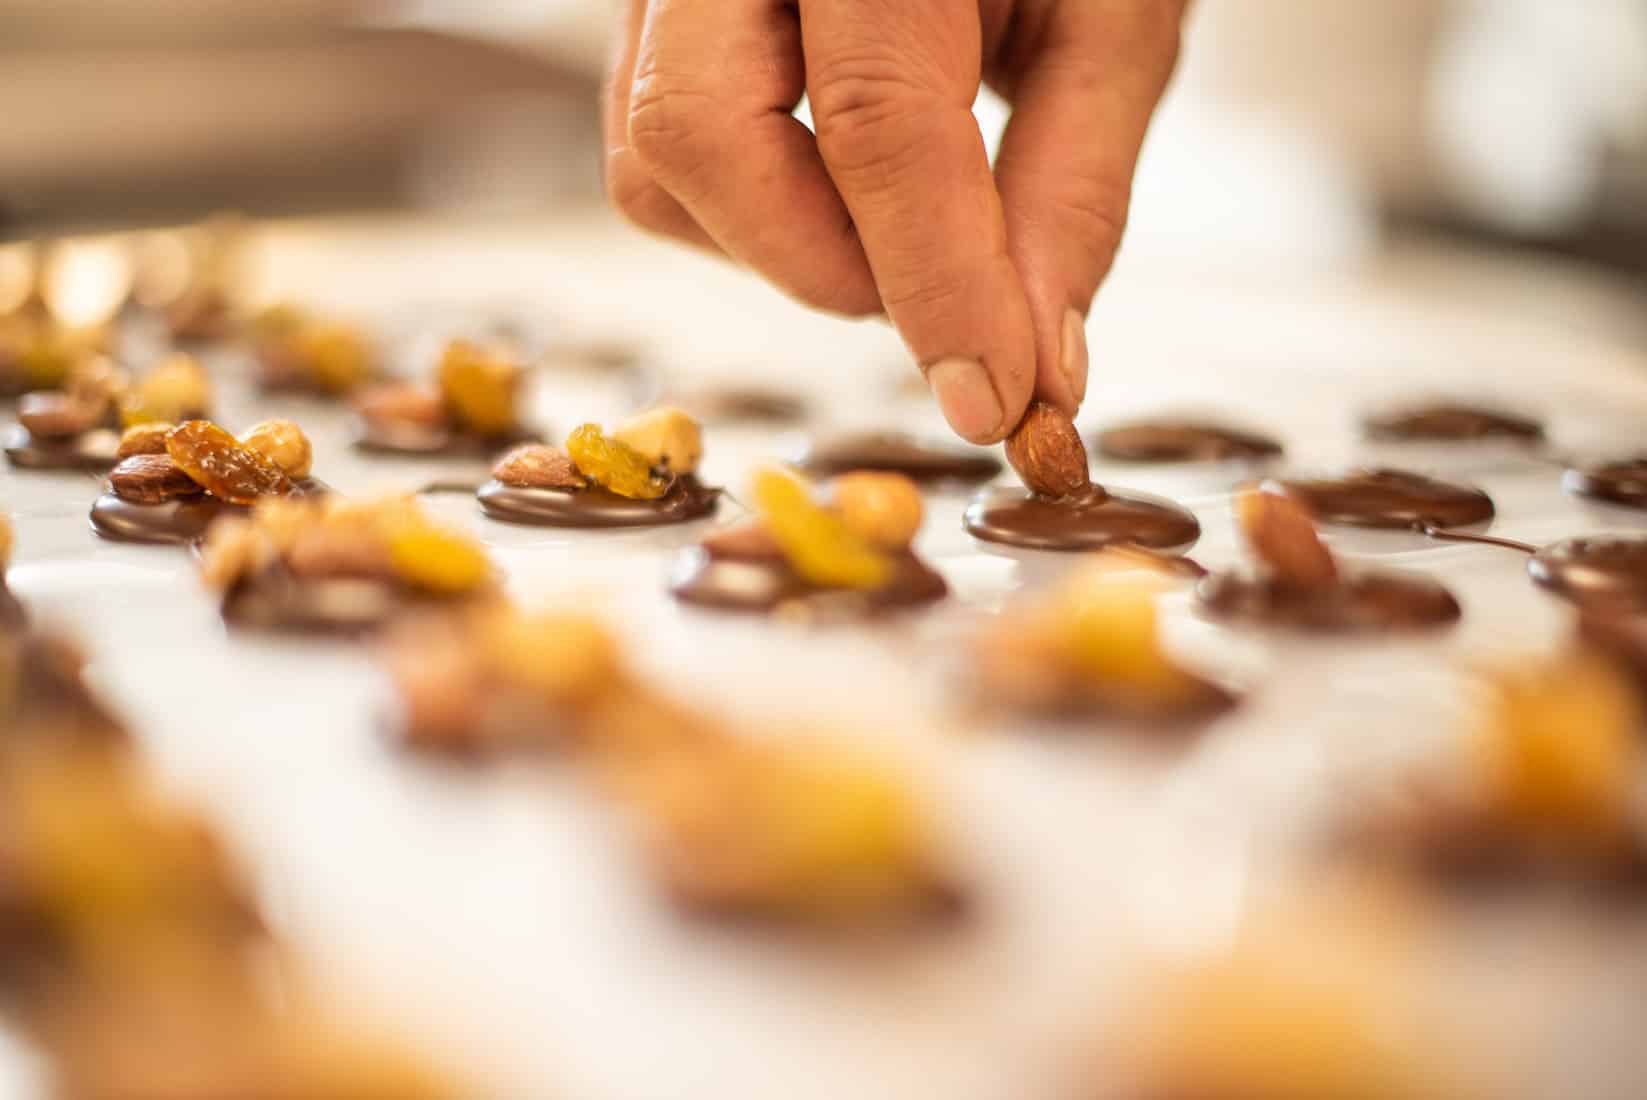 Slide-chocolat-la-route-du-cacao-chocolaterie-pineau artisanale-amande-main-delicat-fruit